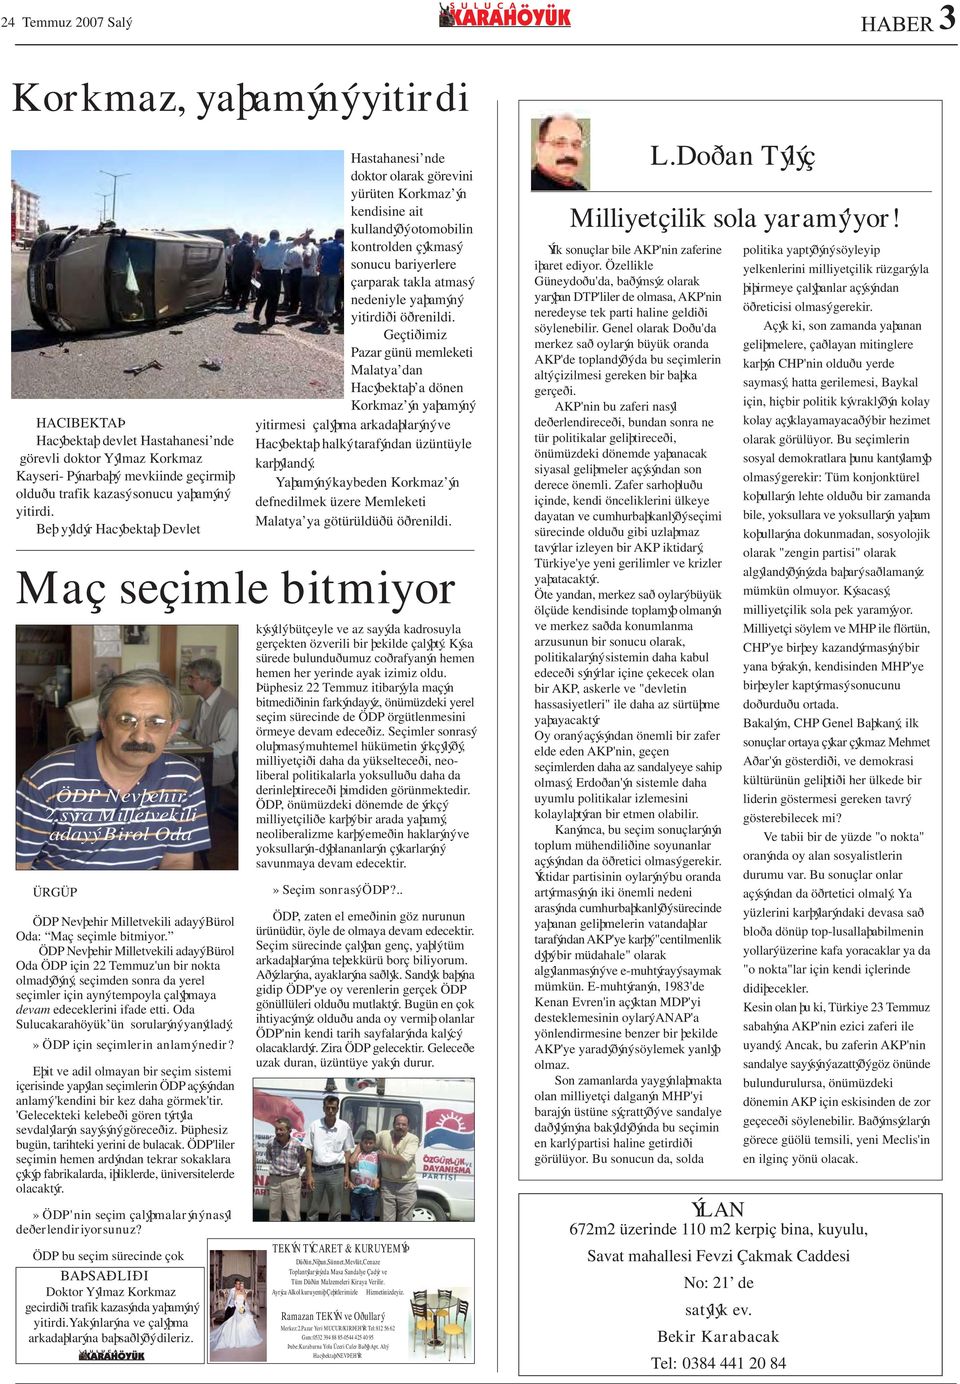 ÖDP Nevþehir Milletvekili adayý Bürol Oda ÖDP için 22 Temmuz'un bir nokta olmadýðýný, seçimden sonra da yerel seçimler için ayný tempoyla çalýþmaya devam edeceklerini ifade etti.